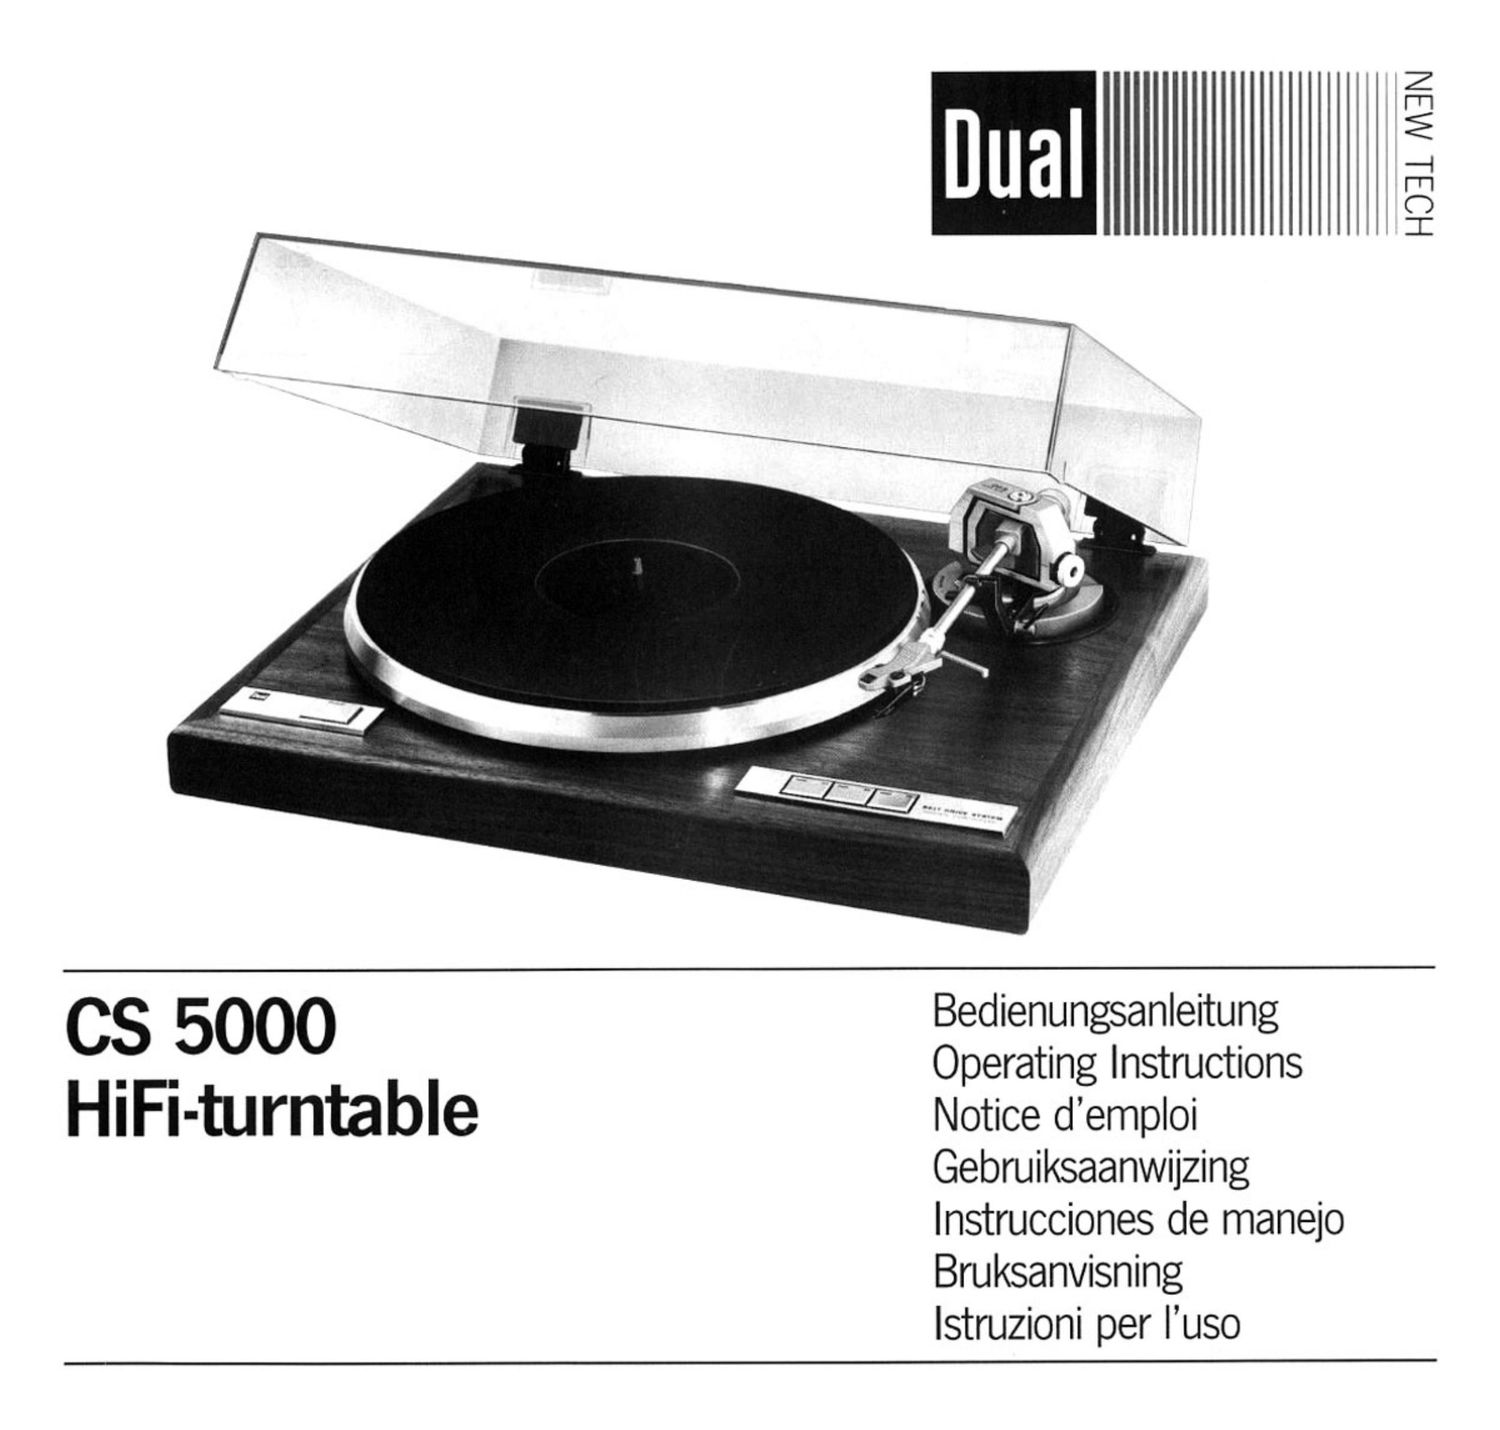 Dual CS 5000 Owners Manual